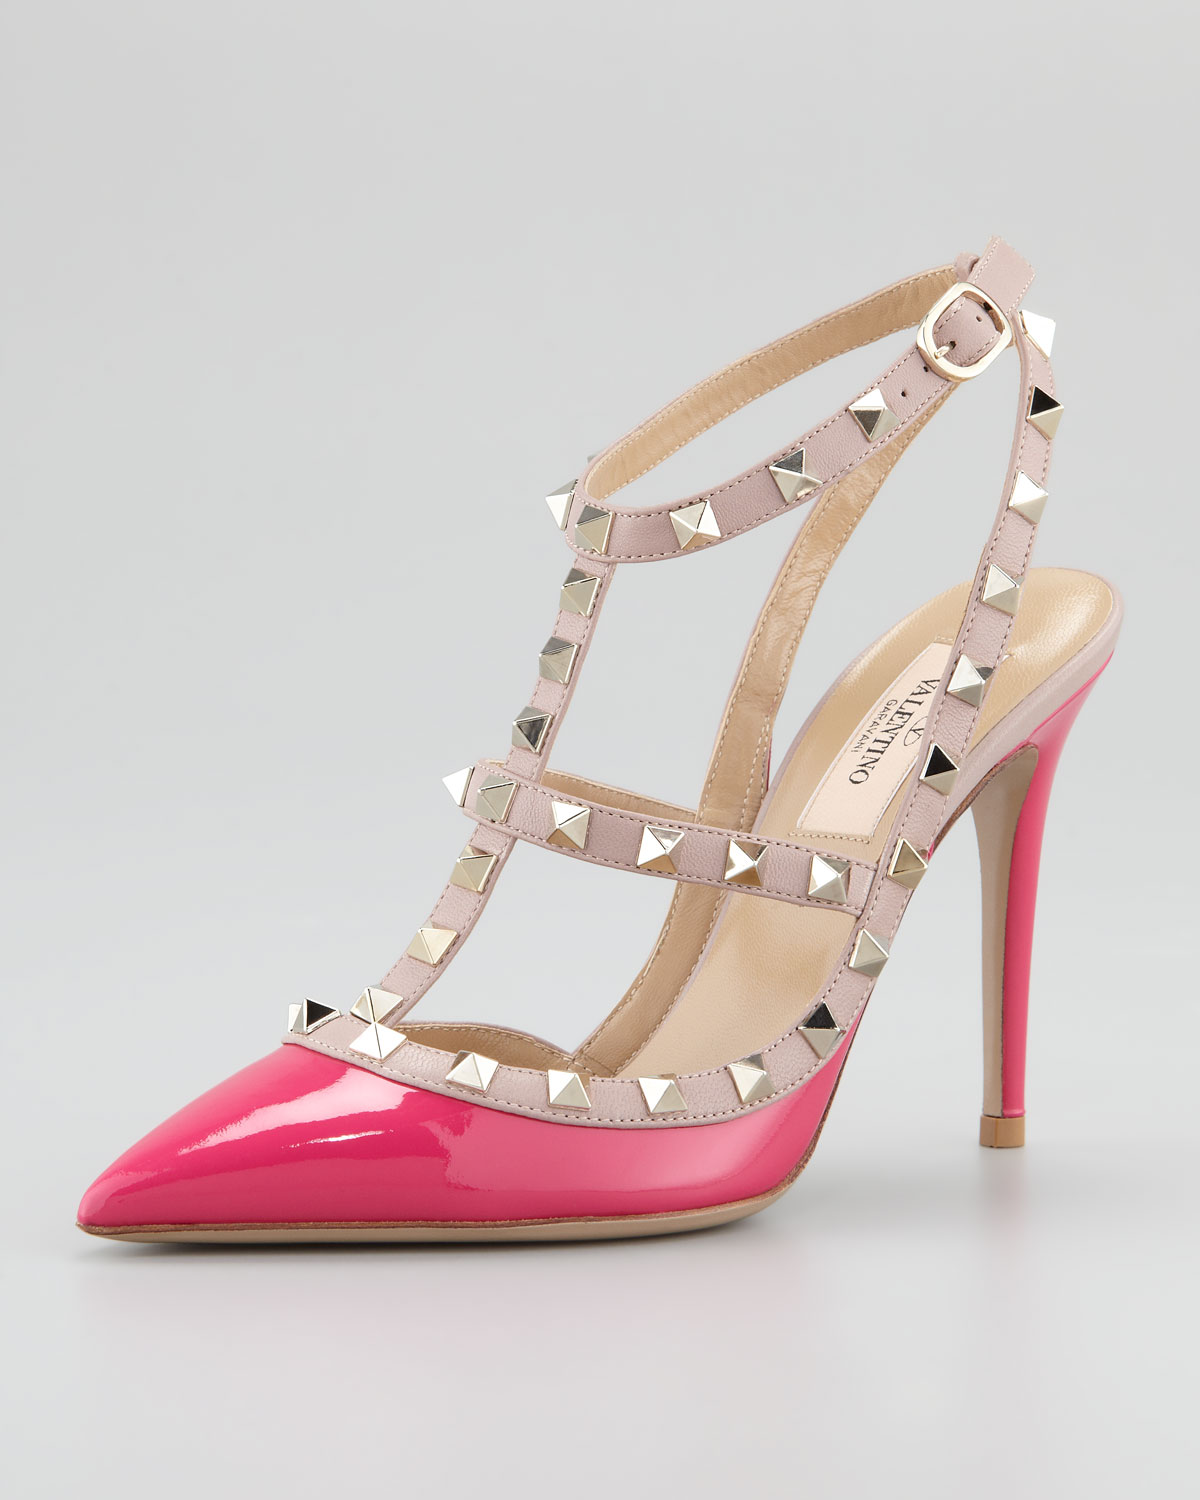 Lyst - Valentino Rockstud Sling-back Sandal in Pink